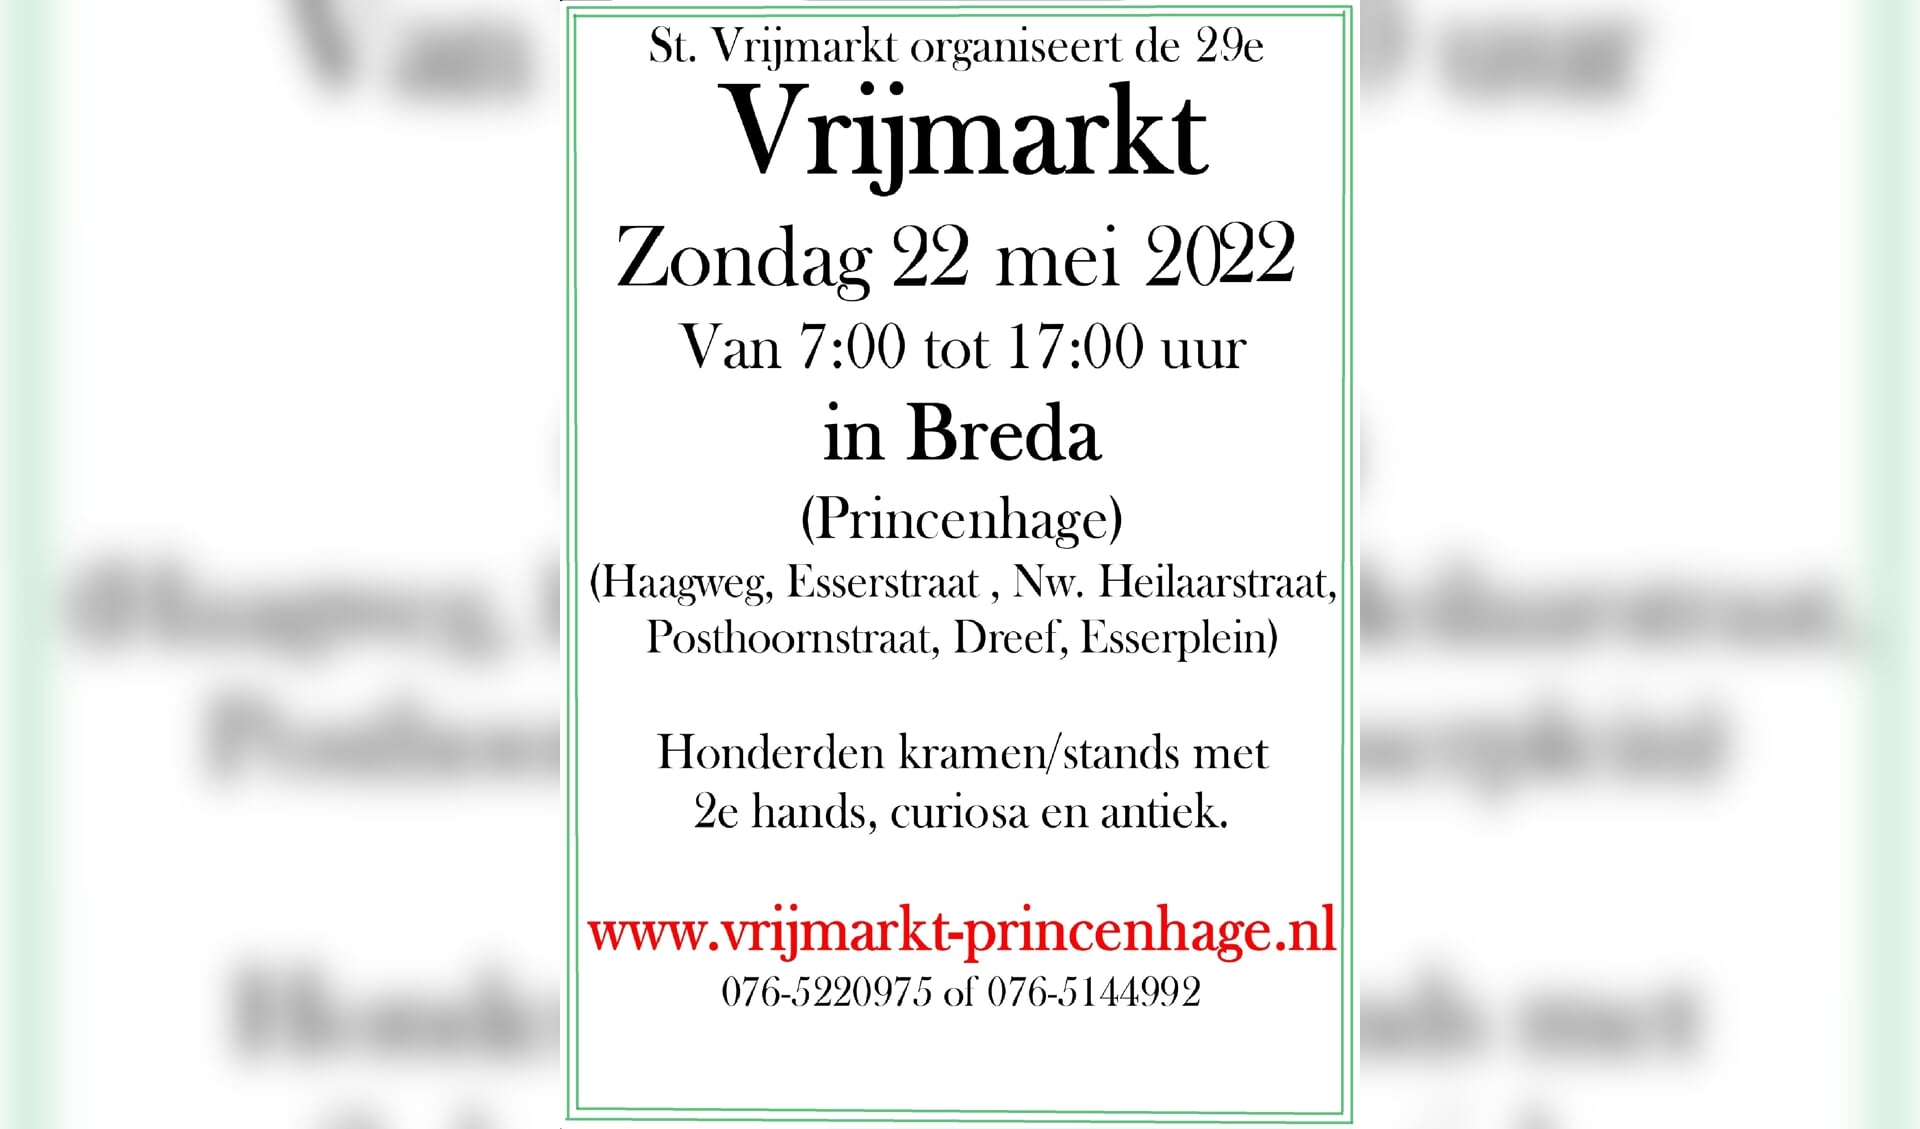 Affiche aankondiging Vrijmarkt  Breda Princenhage